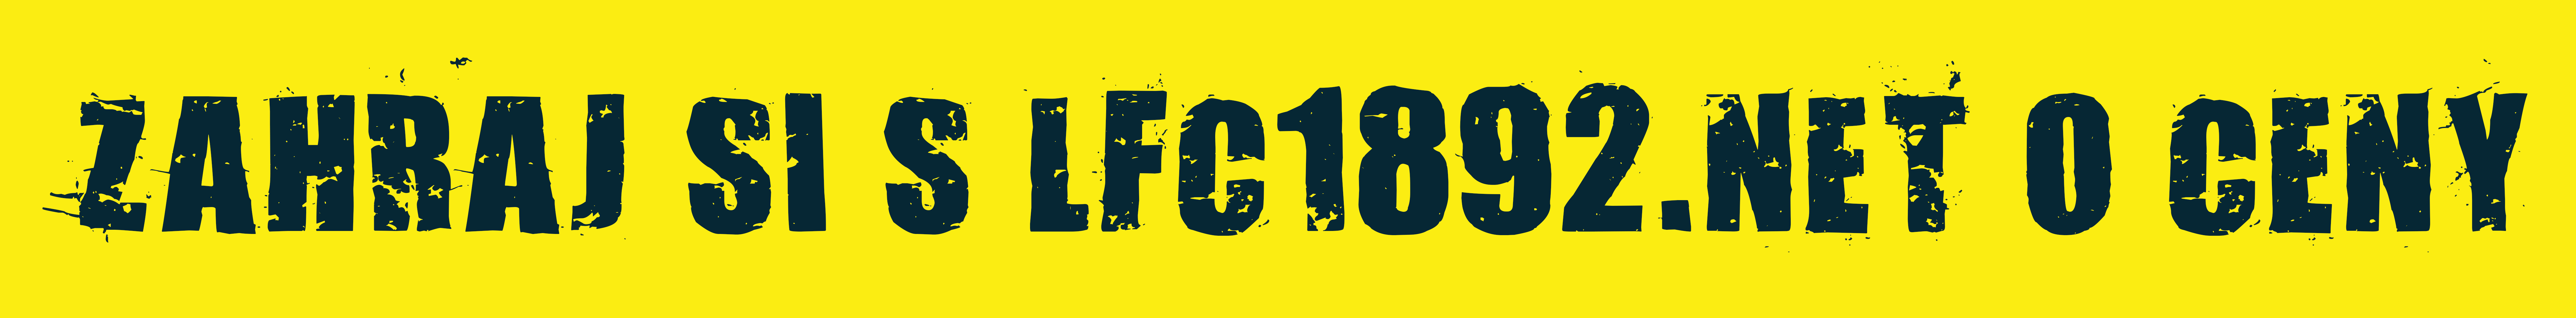 lfc41892.net logo